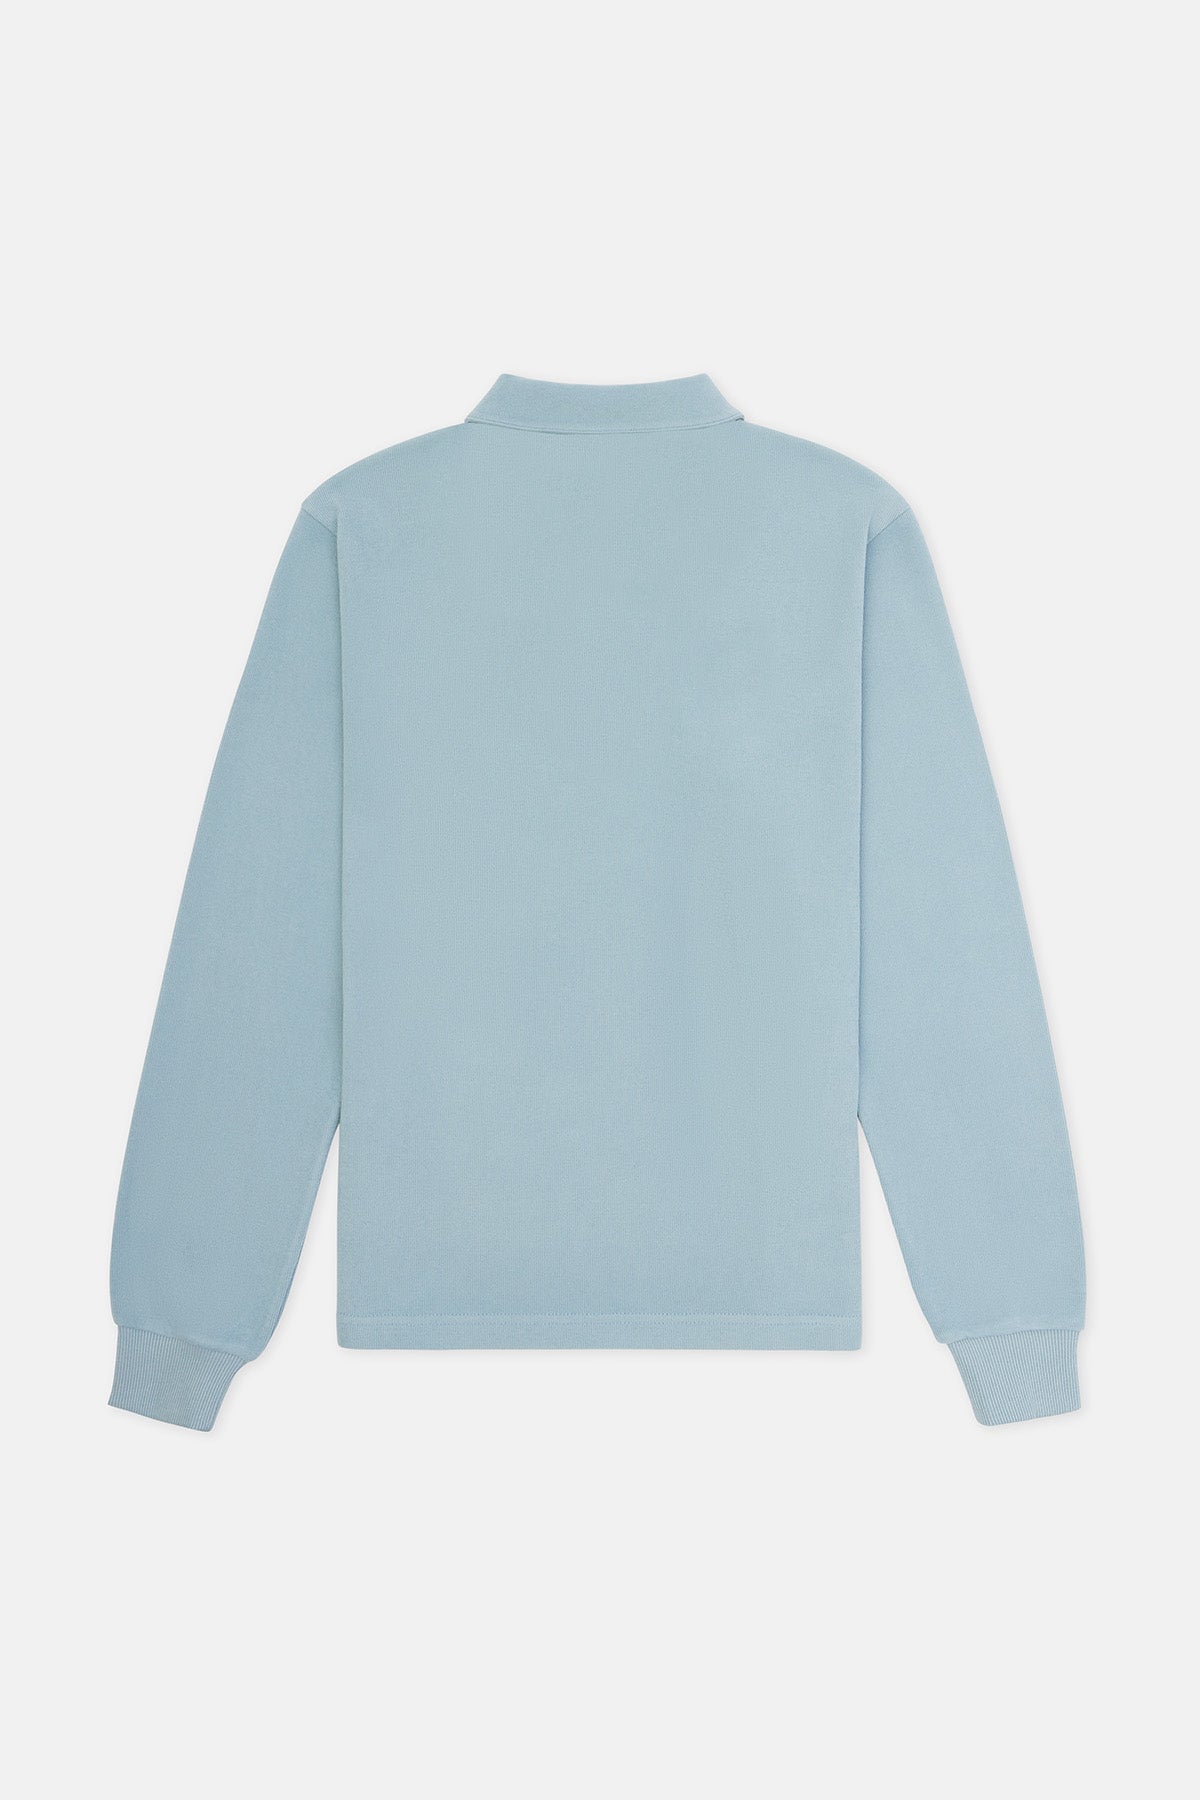 Koala Super Soft Polo Sweatshirt - Mavi